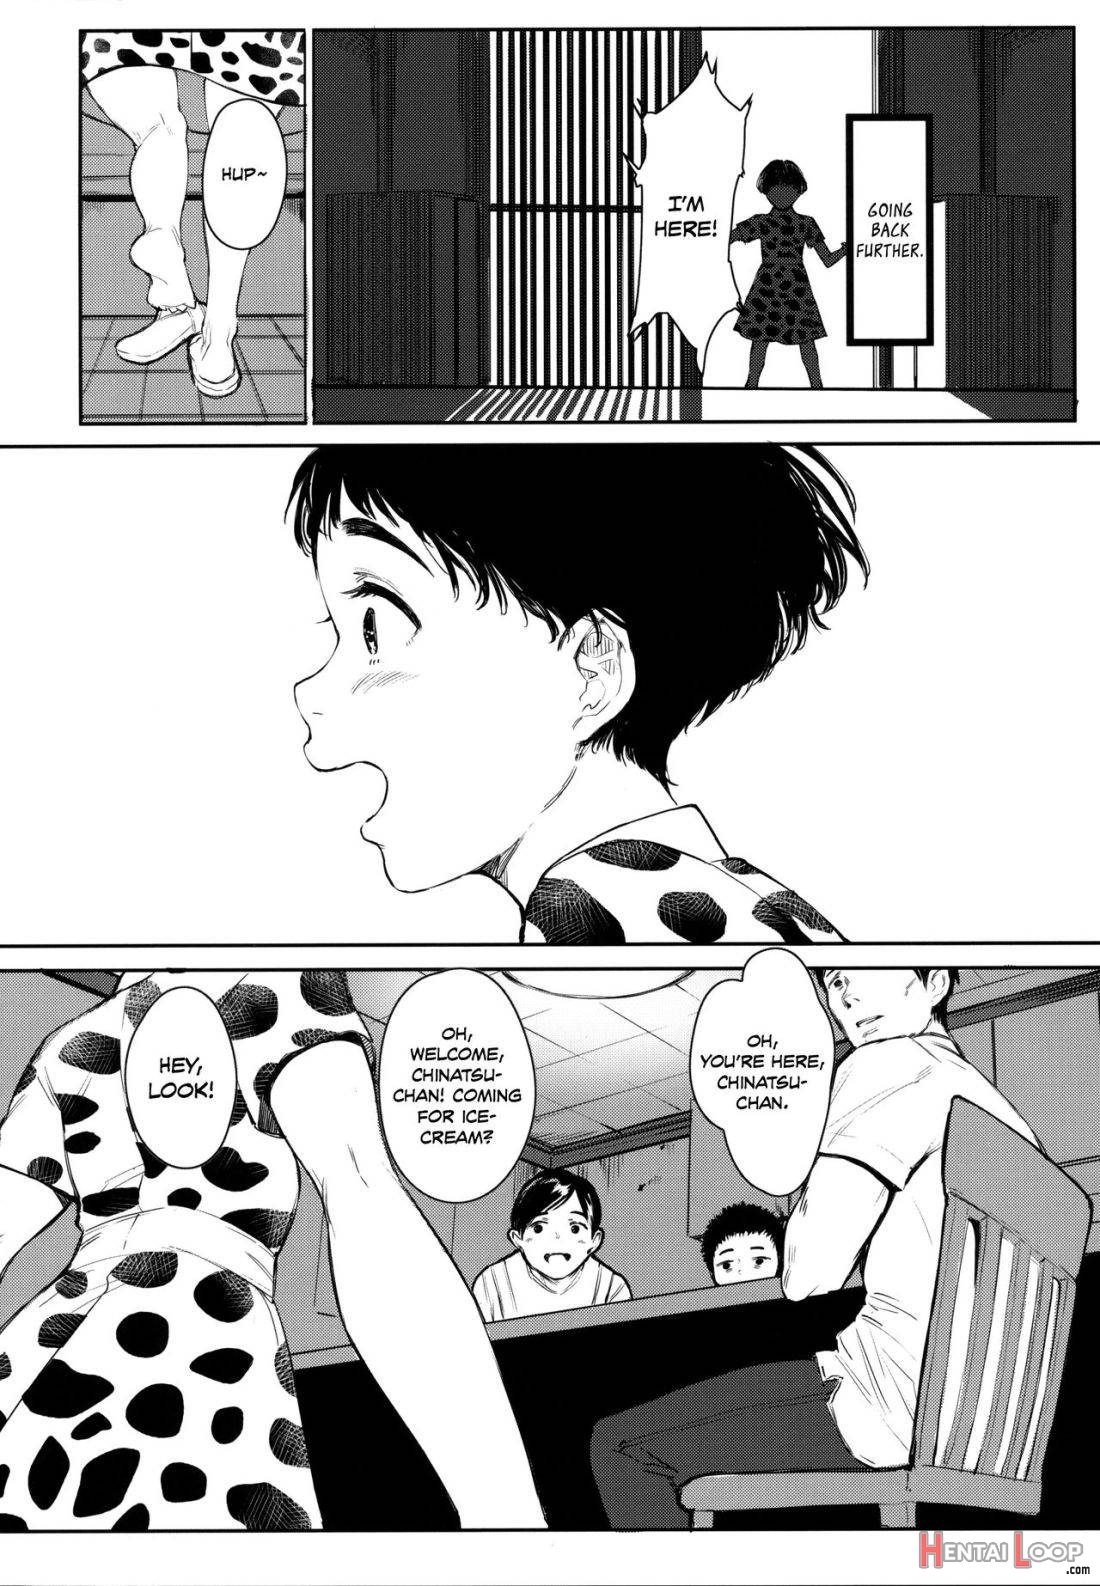 Tonari No Chinatsu-chan R 05 page 4